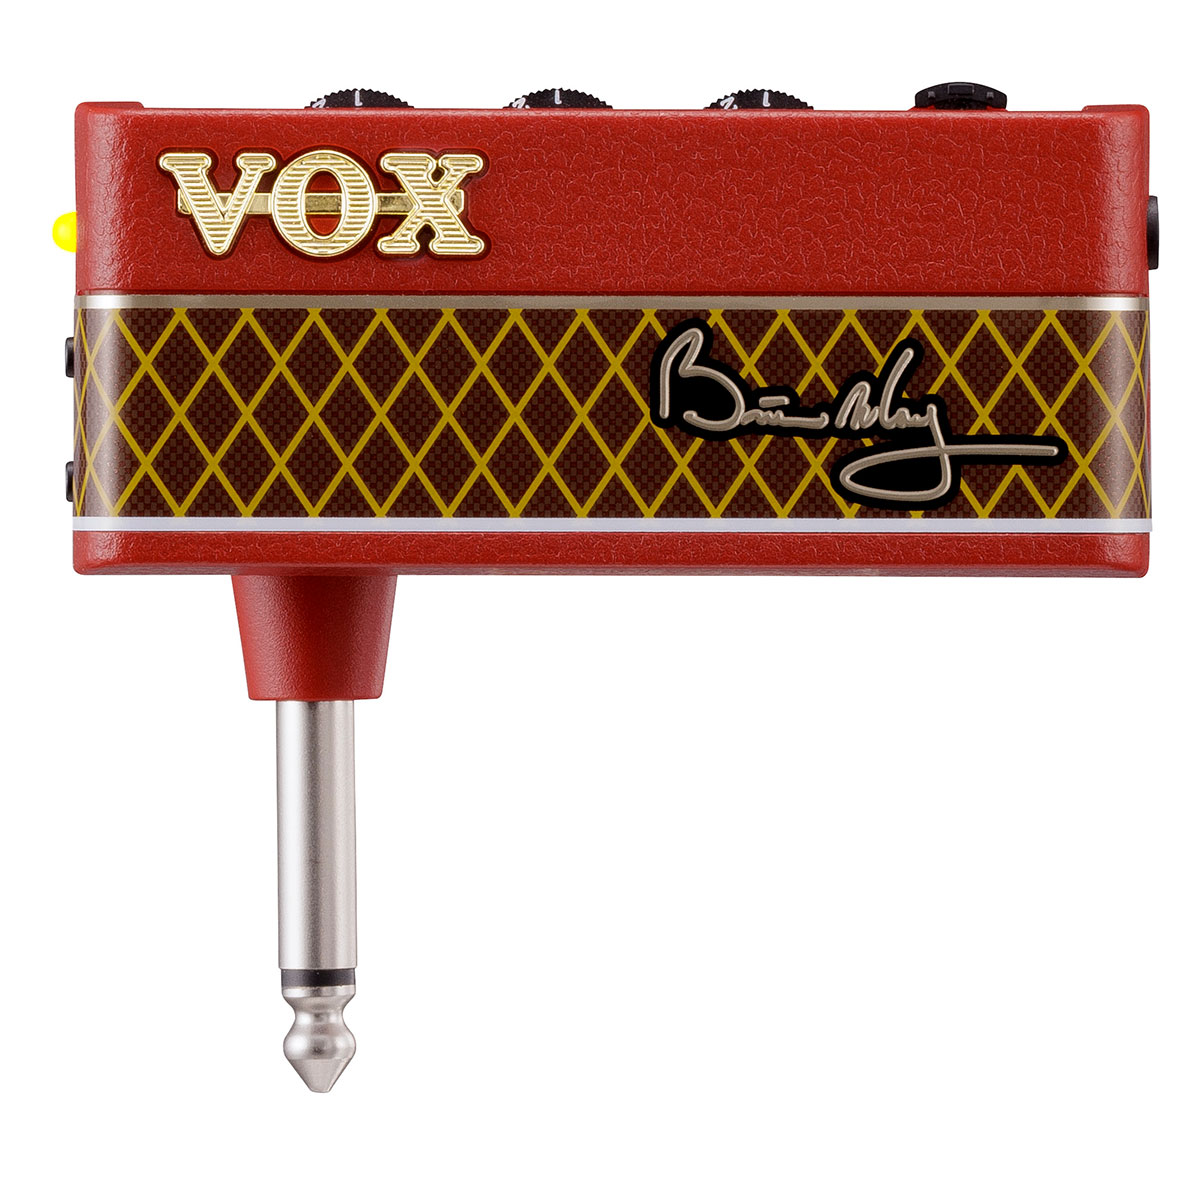 Vox amplug 2ギター/ベースヘッドフォンアンプ、すべての ...